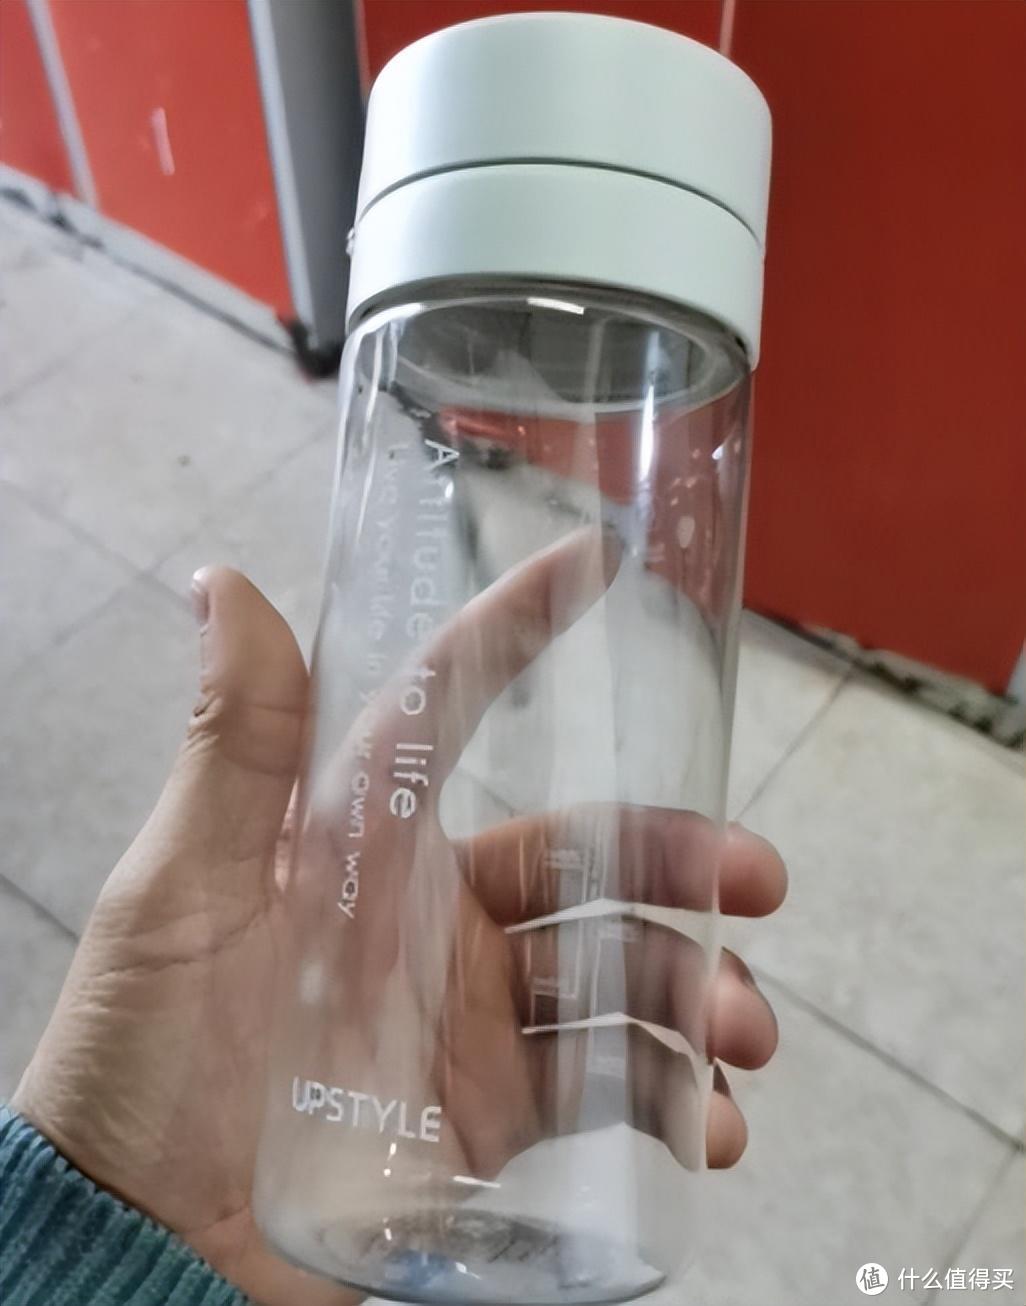 塑料杯子到底能不能倒入热水？依然有人在拿健康开玩笑，建议看看